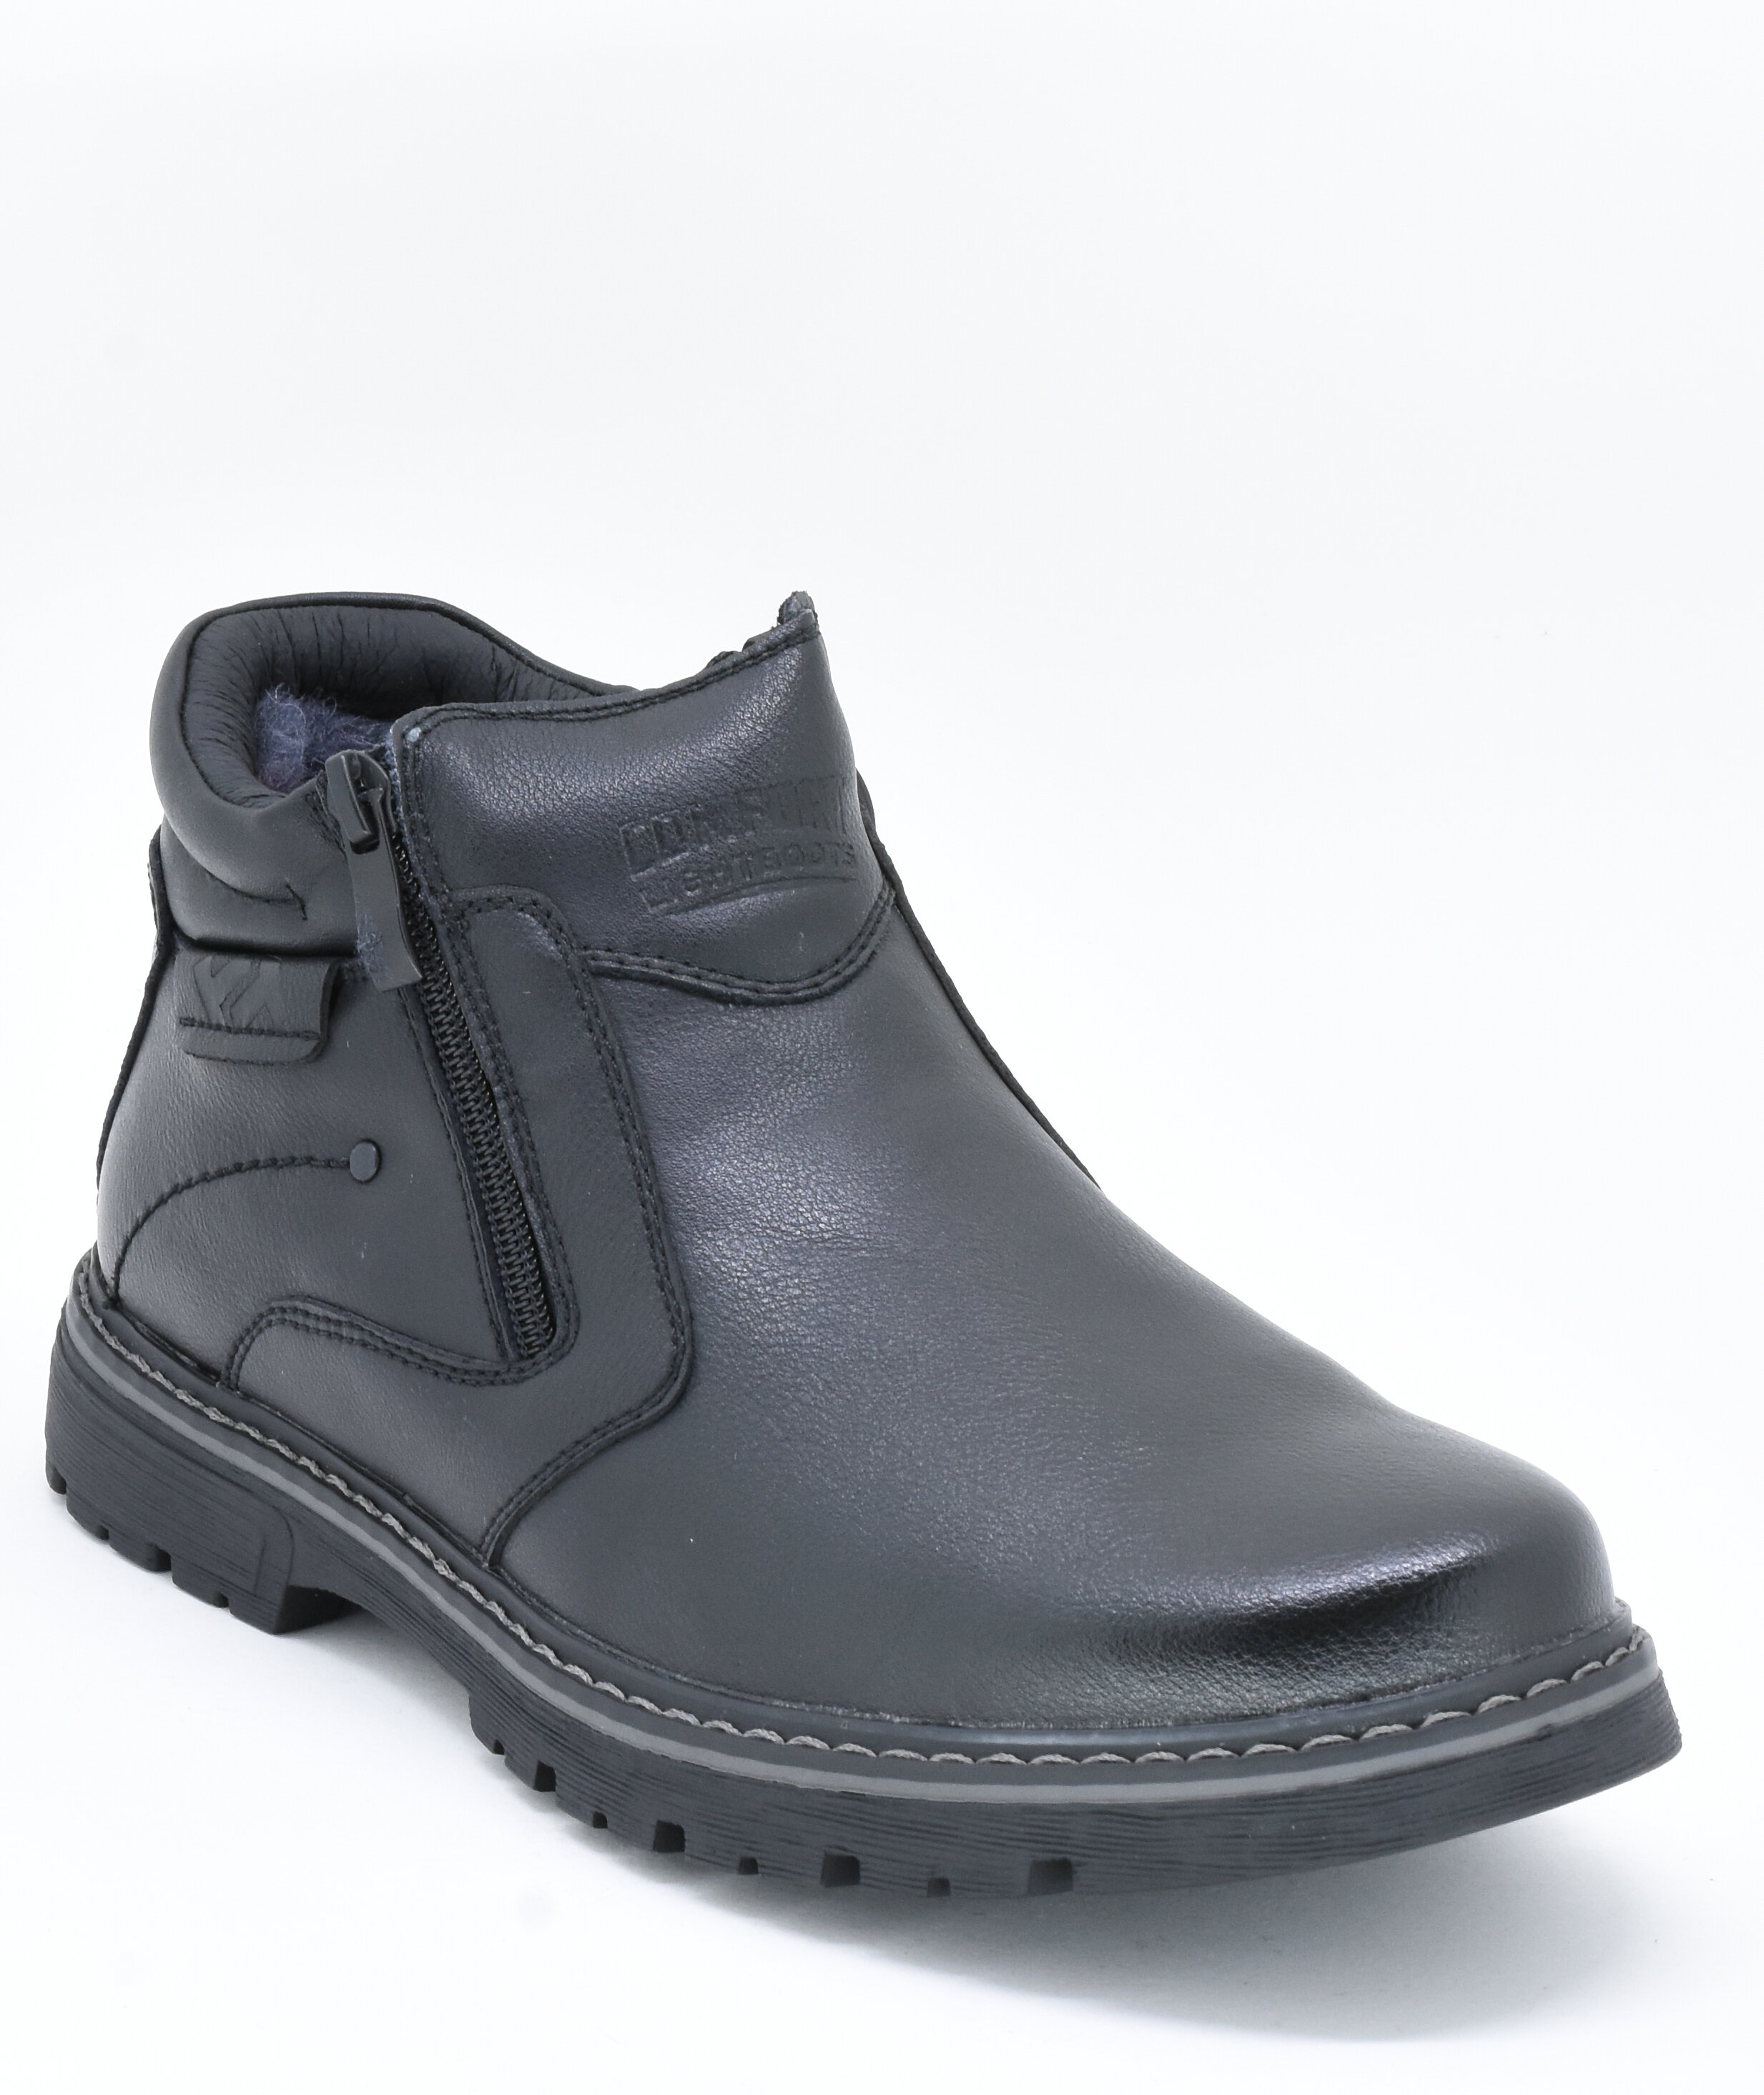 Žieminiai batai vyrams TF'S 16222868.45, juodi, 40 kaina | pigu.lt